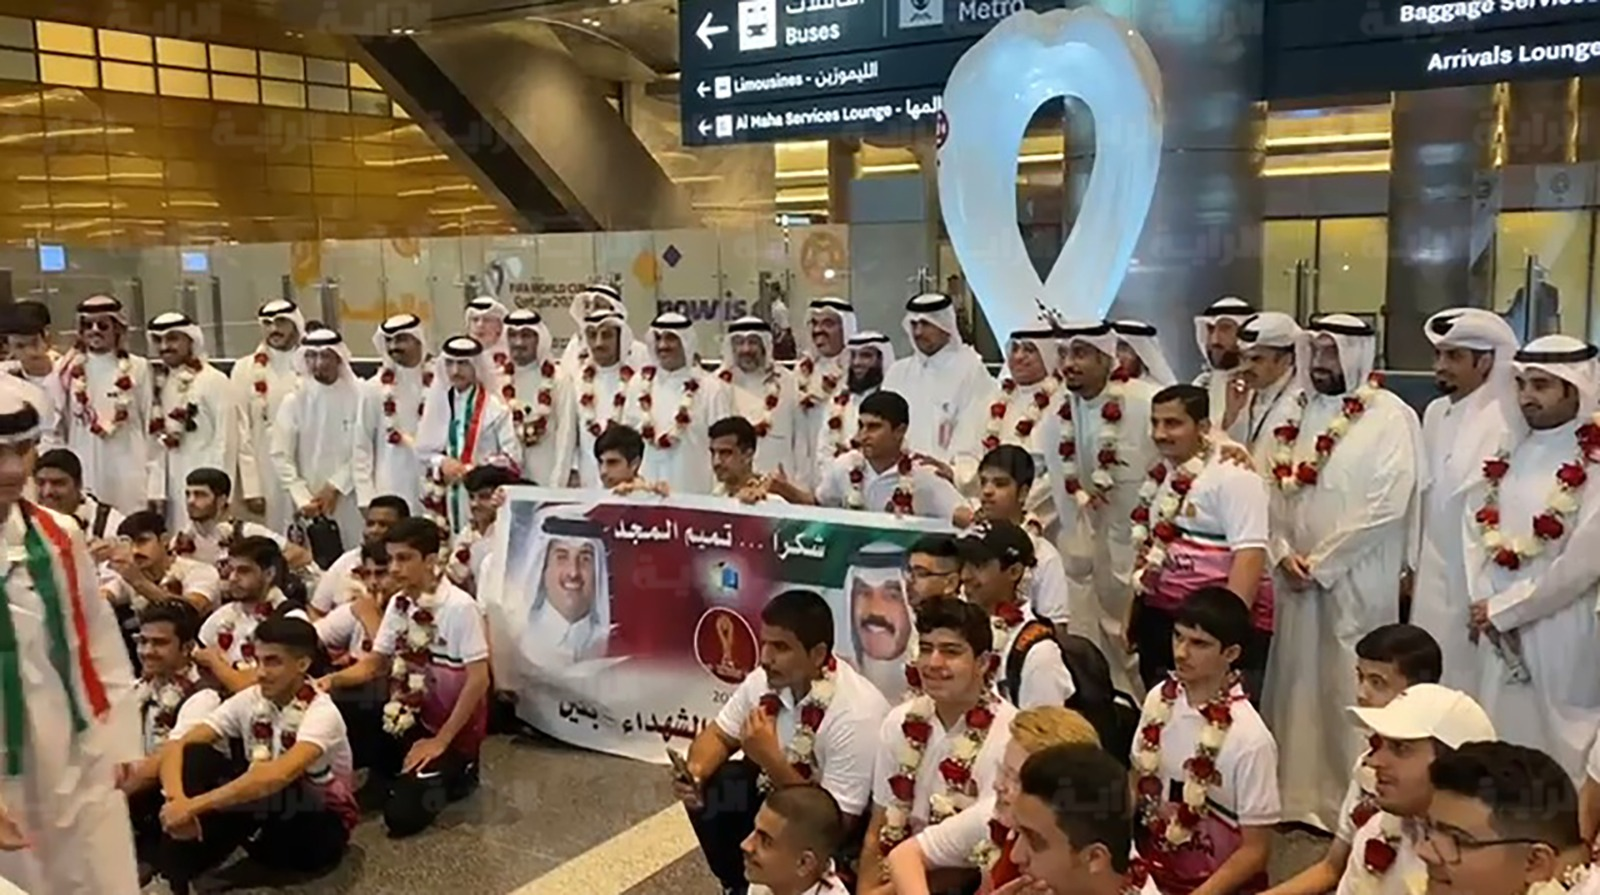 وصول طلاب مدرسة بلاط الشهداء إلى قطر watanserb.com